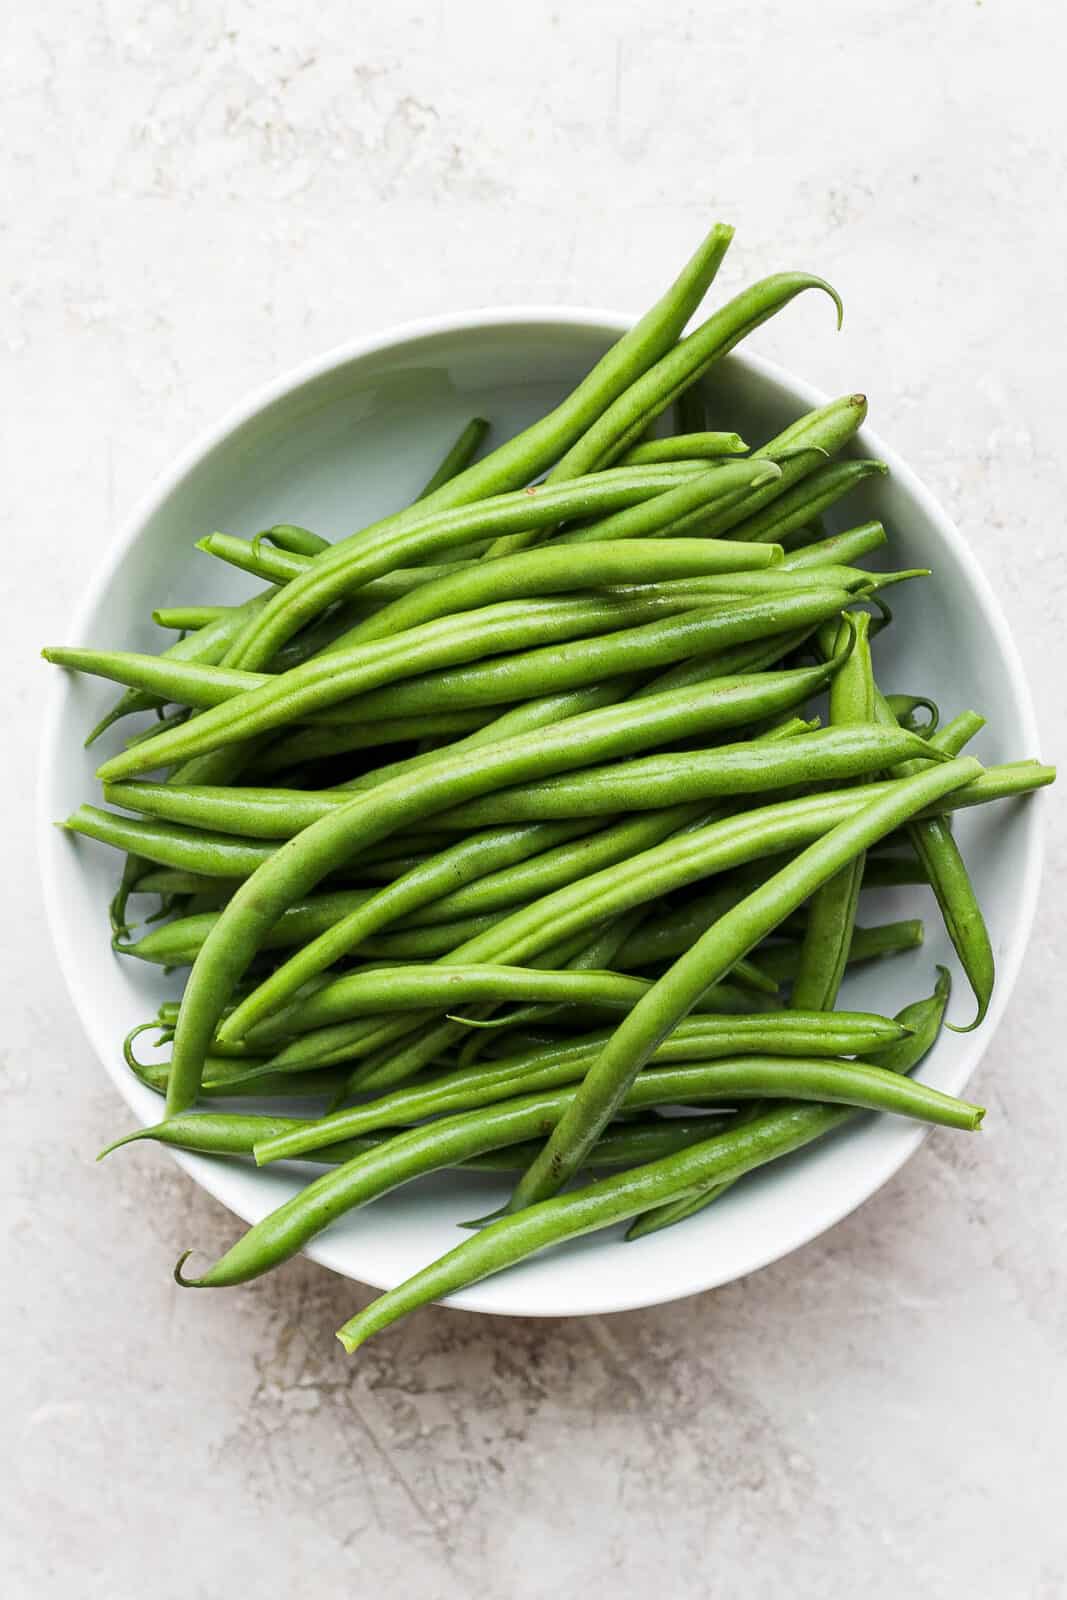 Fresh, clean green beans in a bowl.